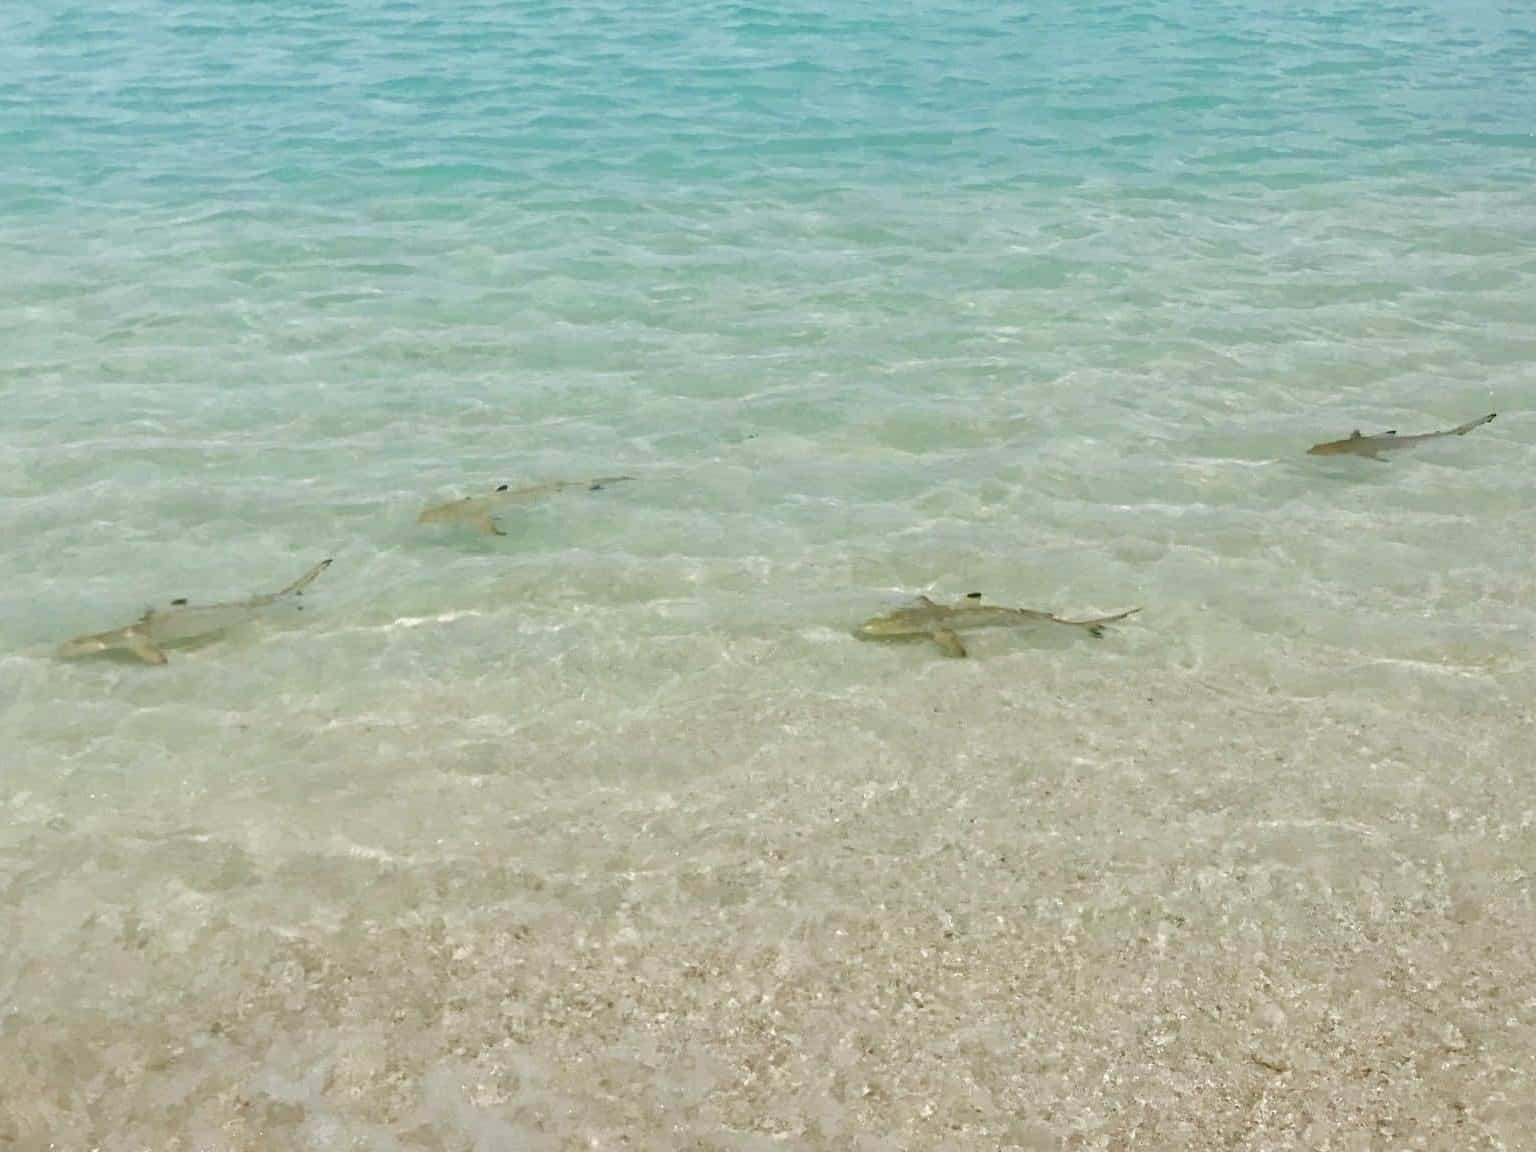 Gatunki rekinów na Malediwach – niebezpieczne dla wczasowiczów podczas kąpieli?